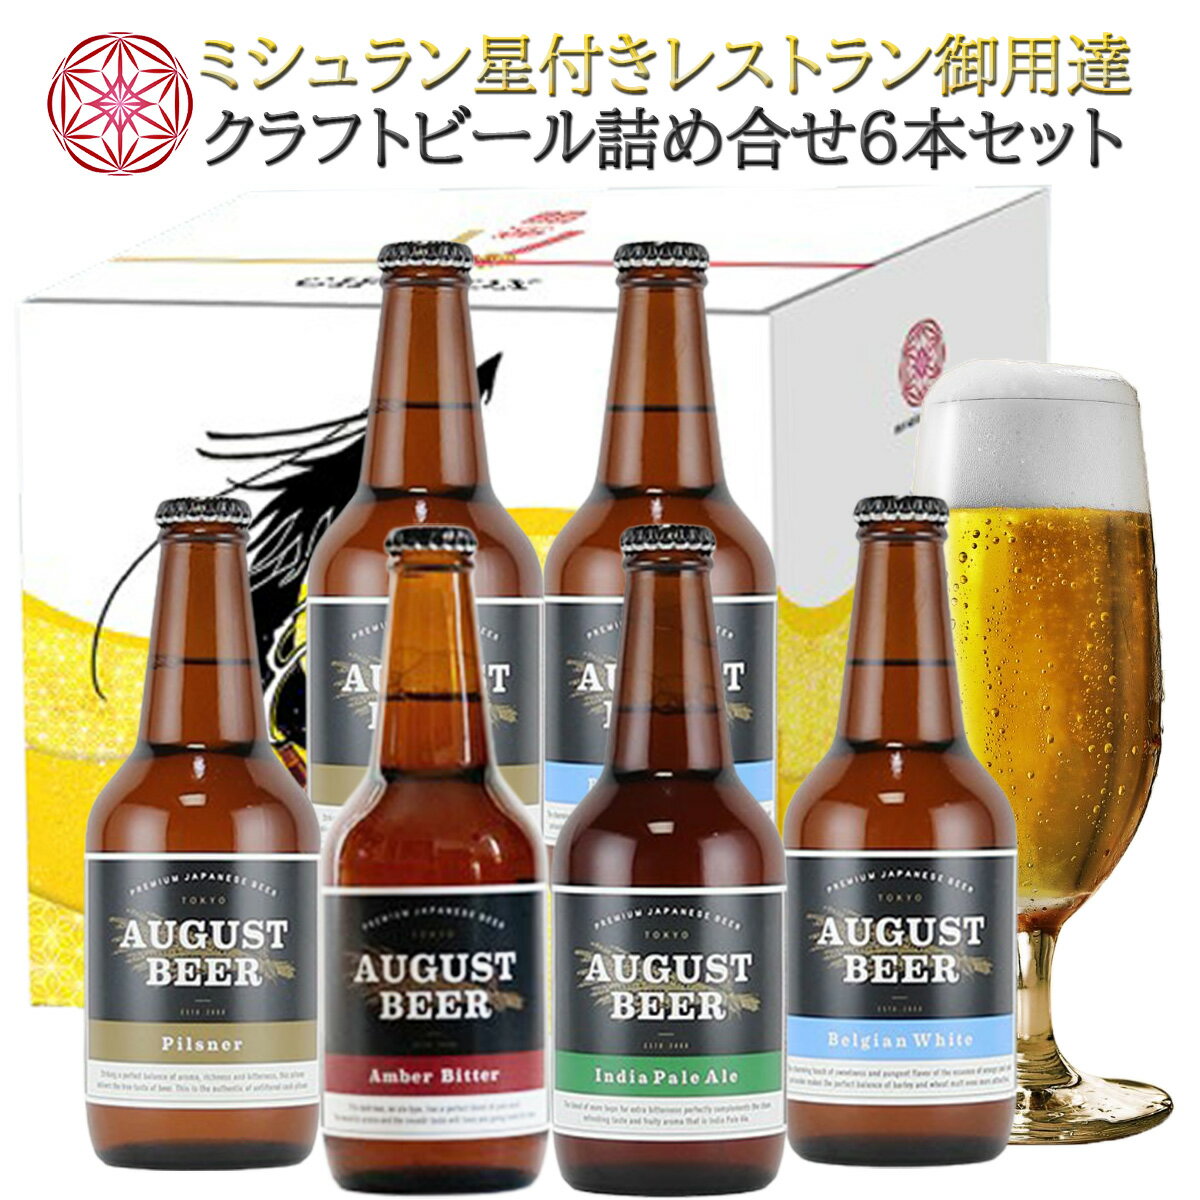 【送料無料】 クラフトビール 【6本セット】アウグスビール 